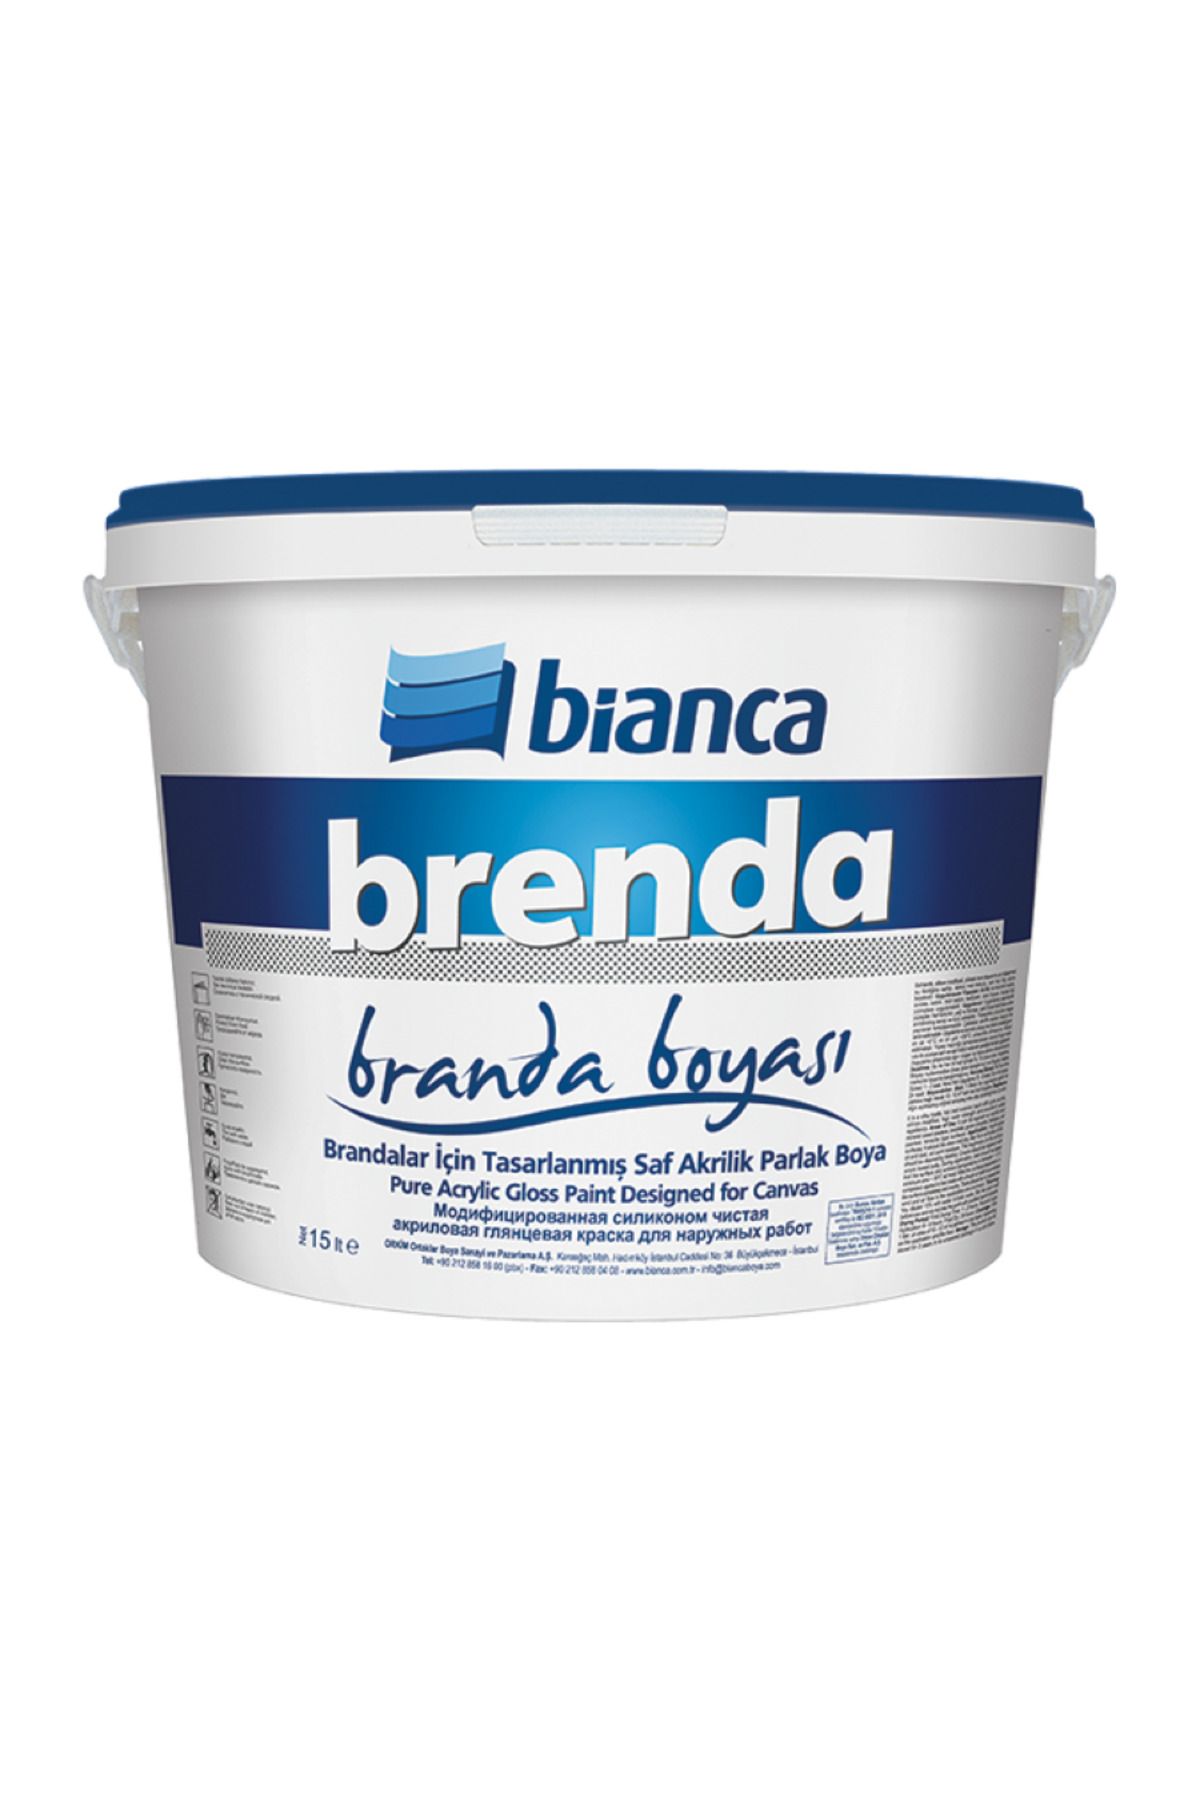 Bianca Branda boyası (Bianca- Brenda) 2,5 lt